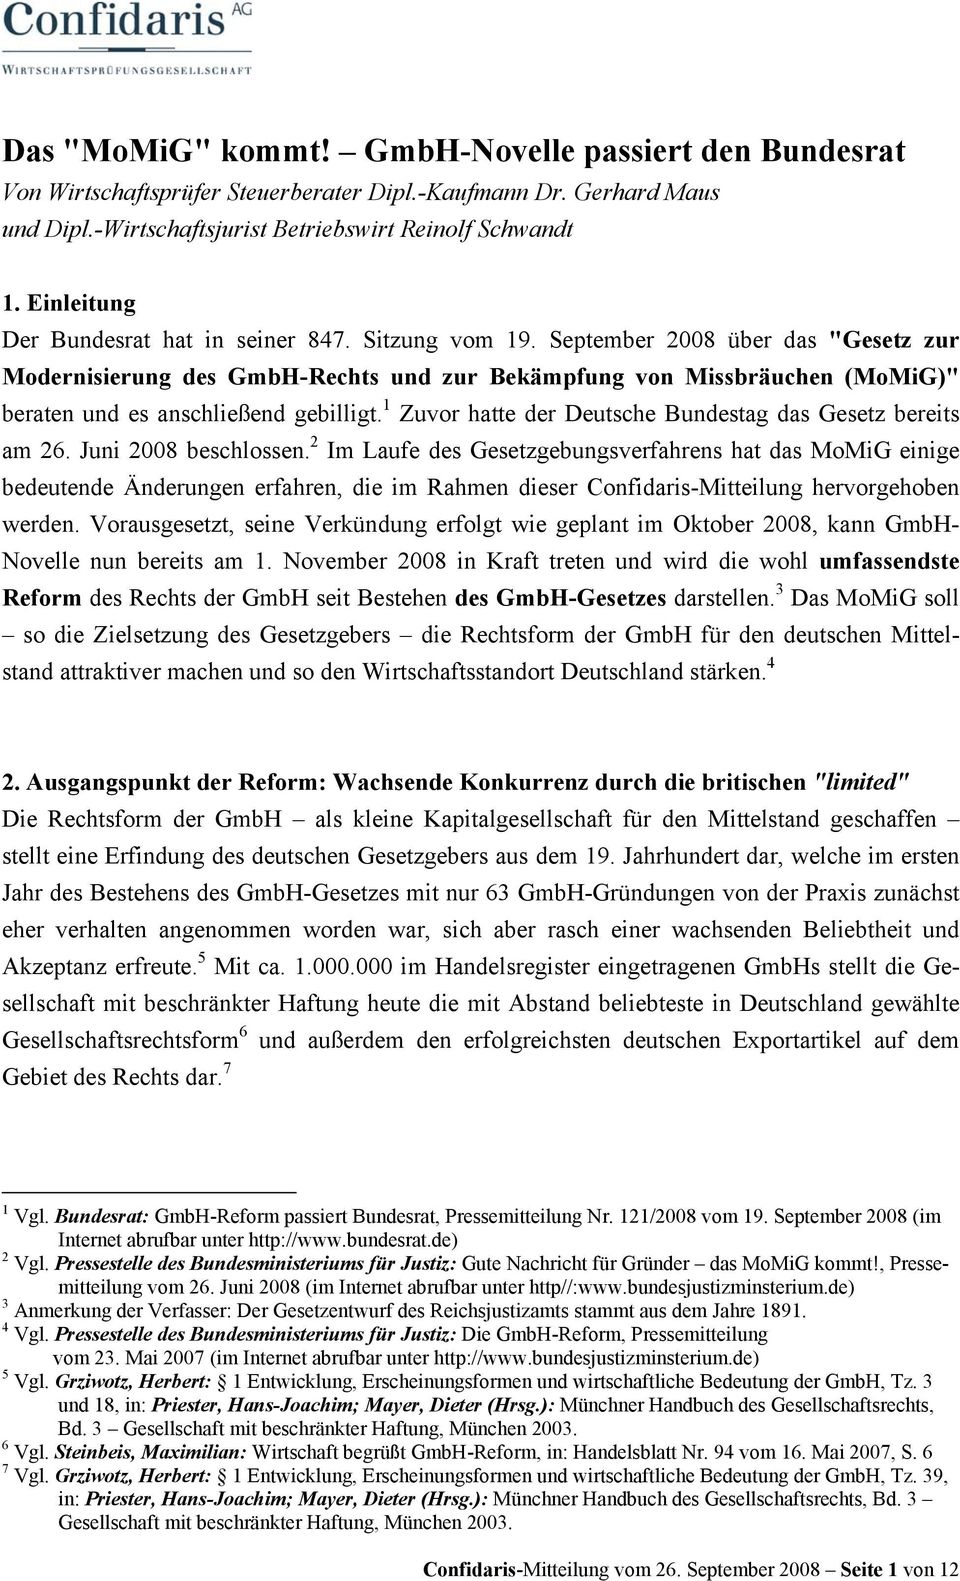 September 2008 über das "Gesetz zur Modernisierung des GmbH-Rechts und zur Bekämpfung von Missbräuchen (MoMiG)" beraten und es anschließend gebilligt.